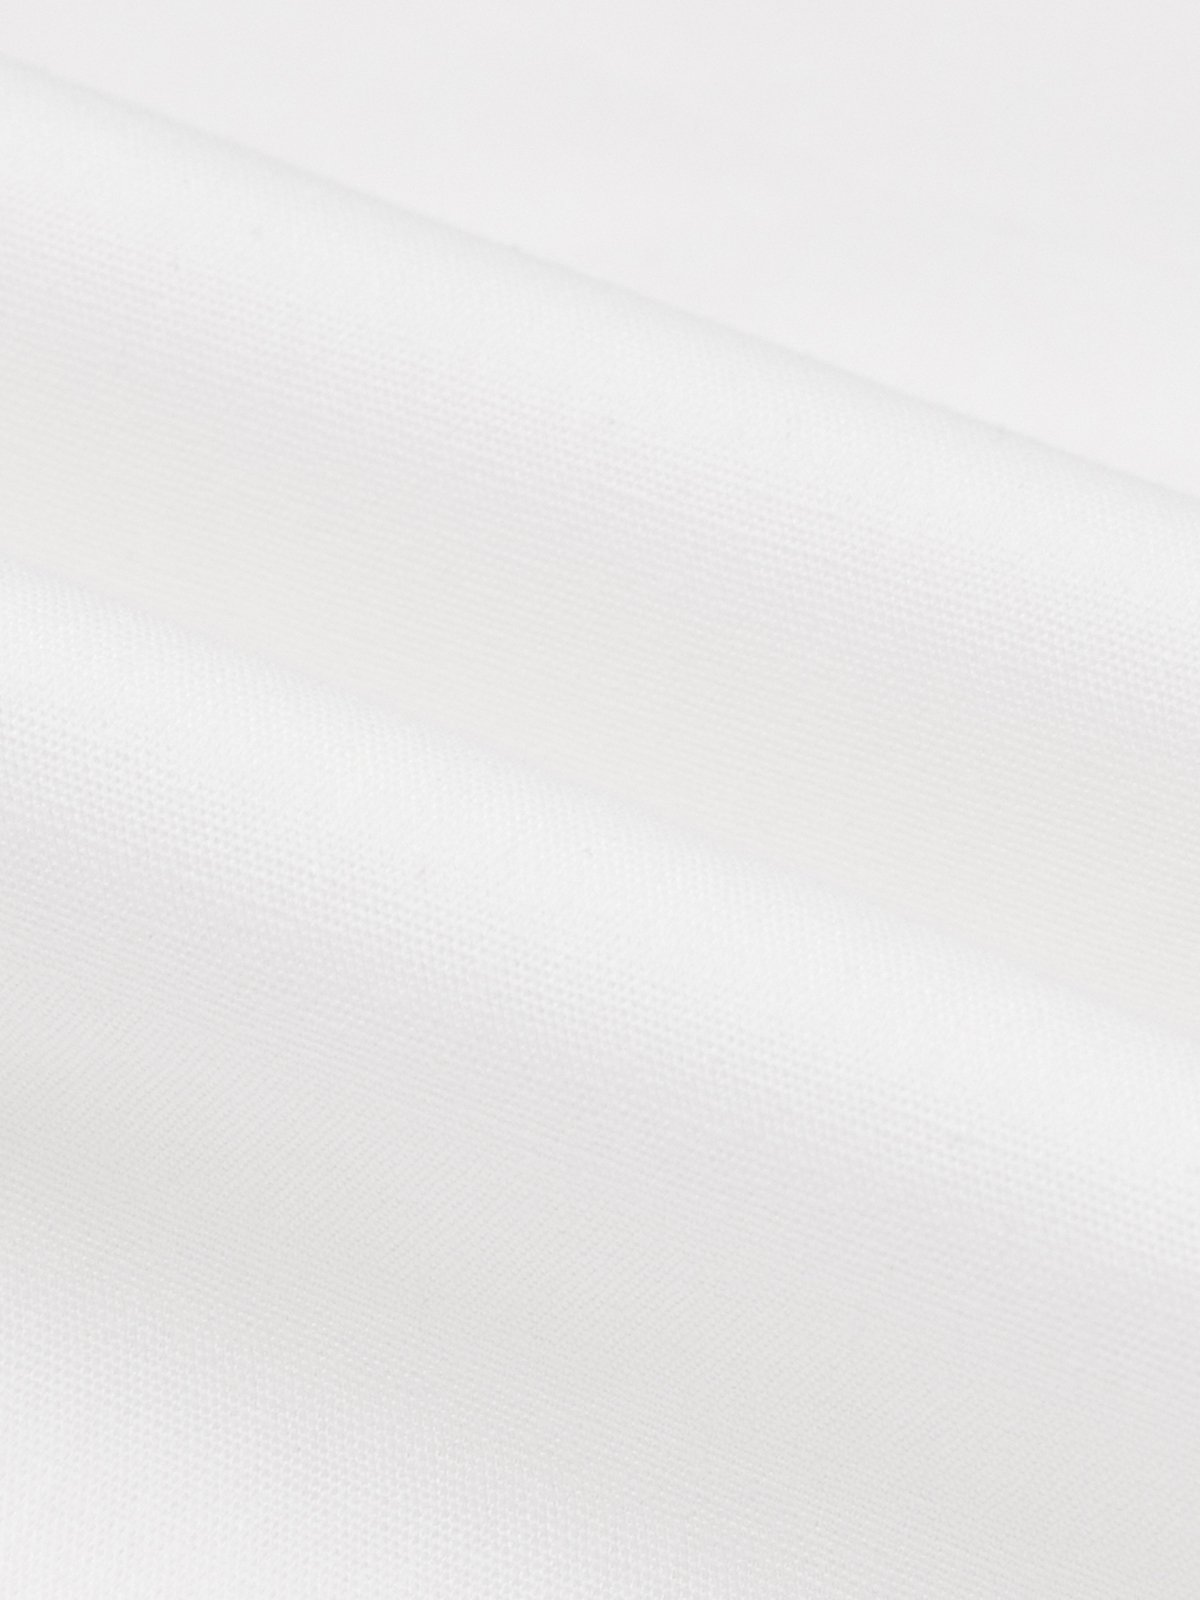 Long sleeve Elegant Regular Fit Shirt Collar White Blouse | stylewe